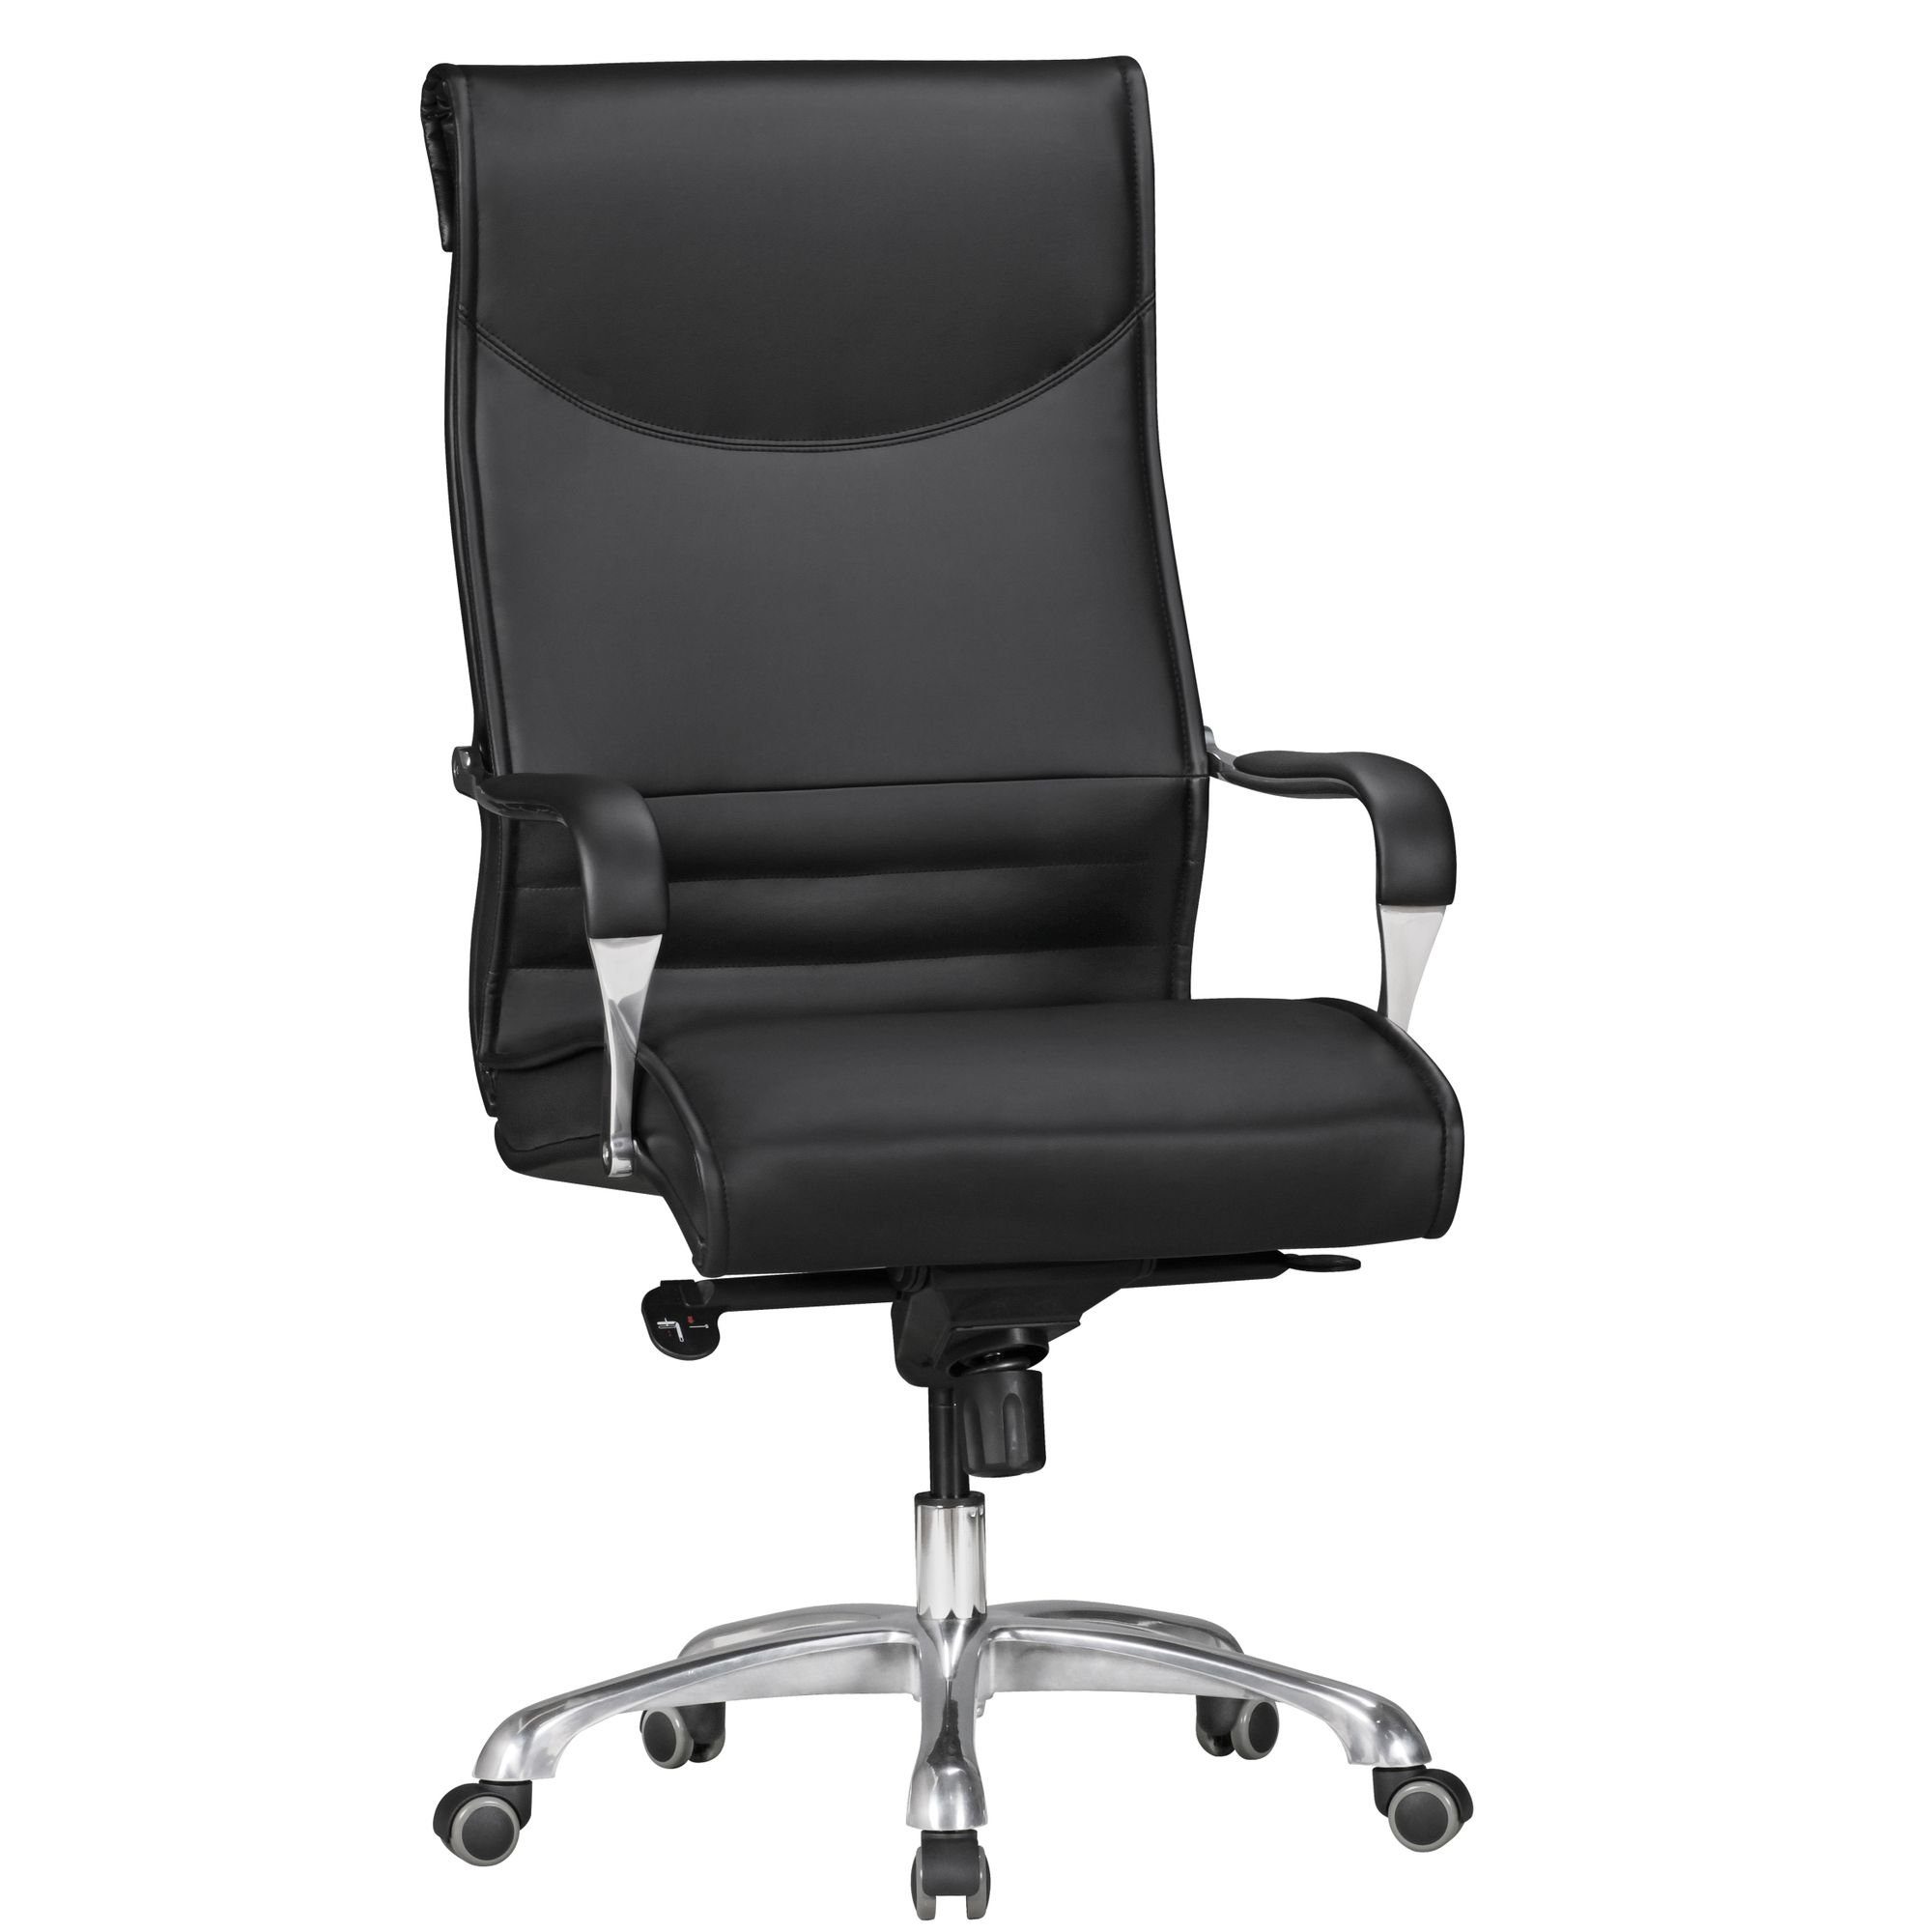 KADIMA DESIGN Chefsessel Chefsessel - Komfortabler Arbeitssessel für ergonomisches Sitzen Schwarz | Schwarz | Chefsessel